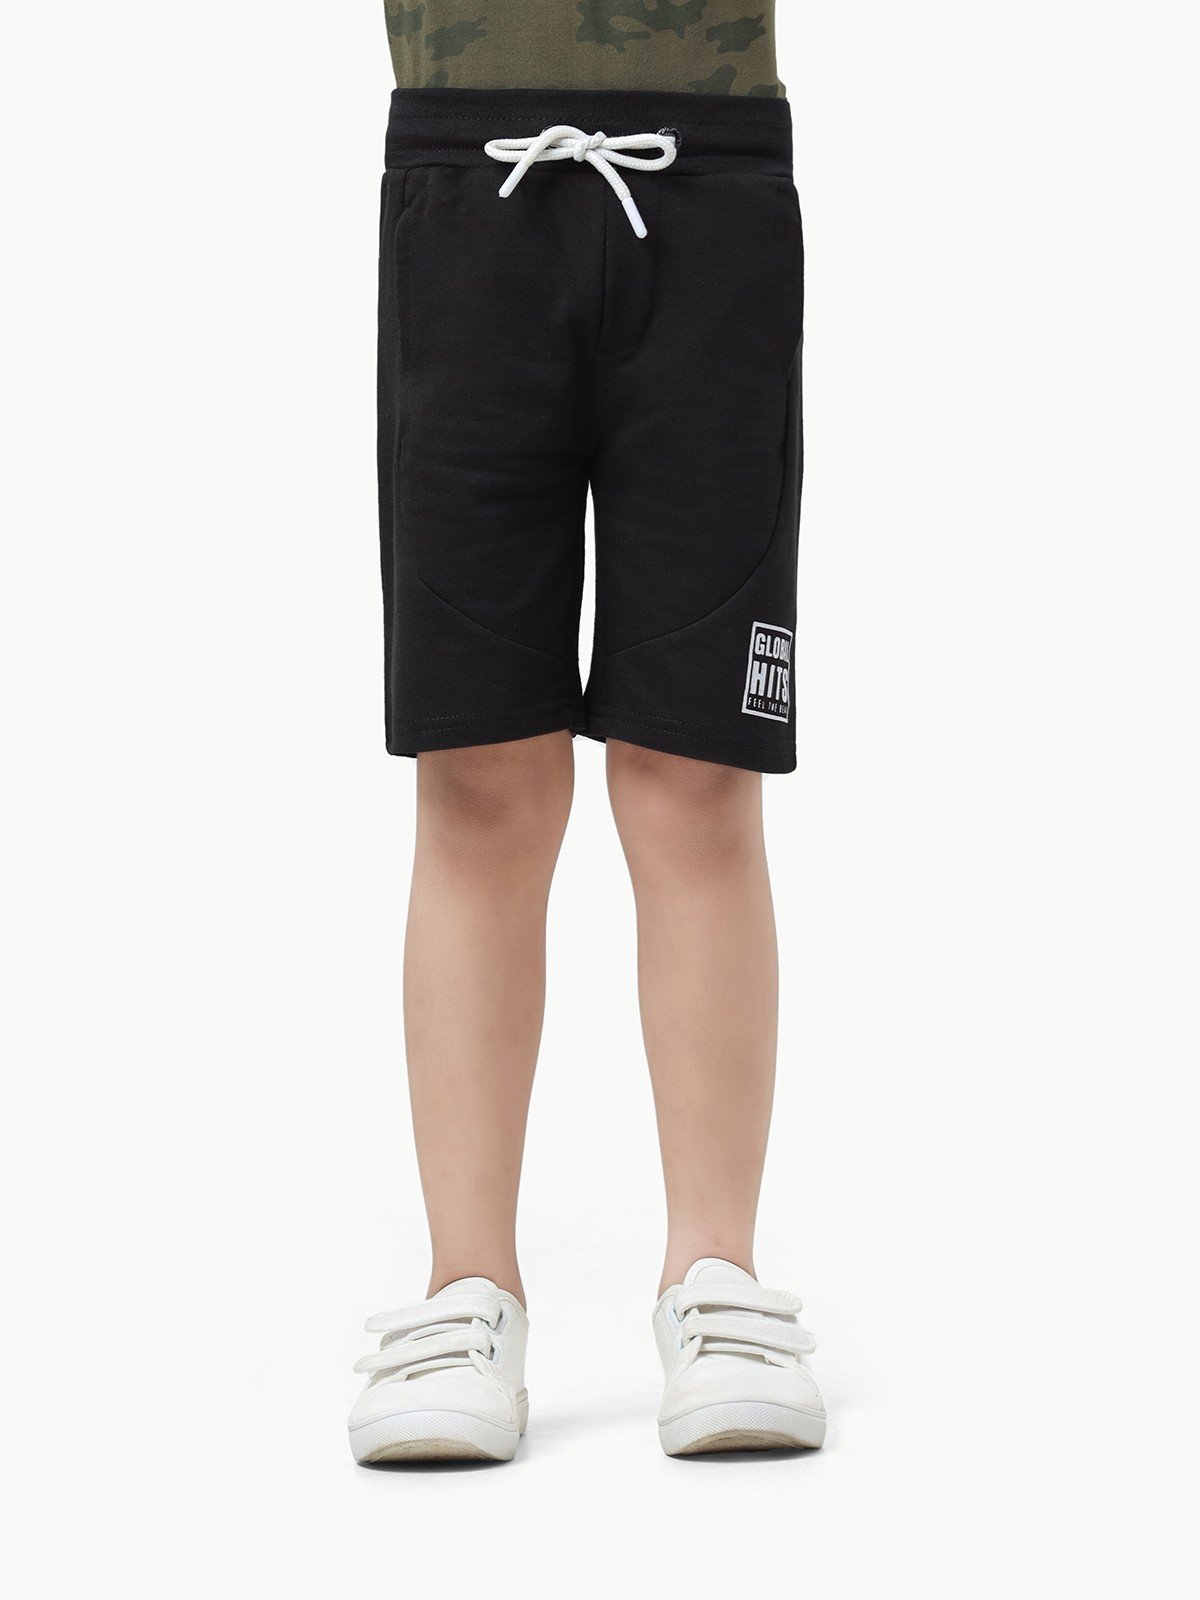 Boy's Black Shorts - EBBSK23-021